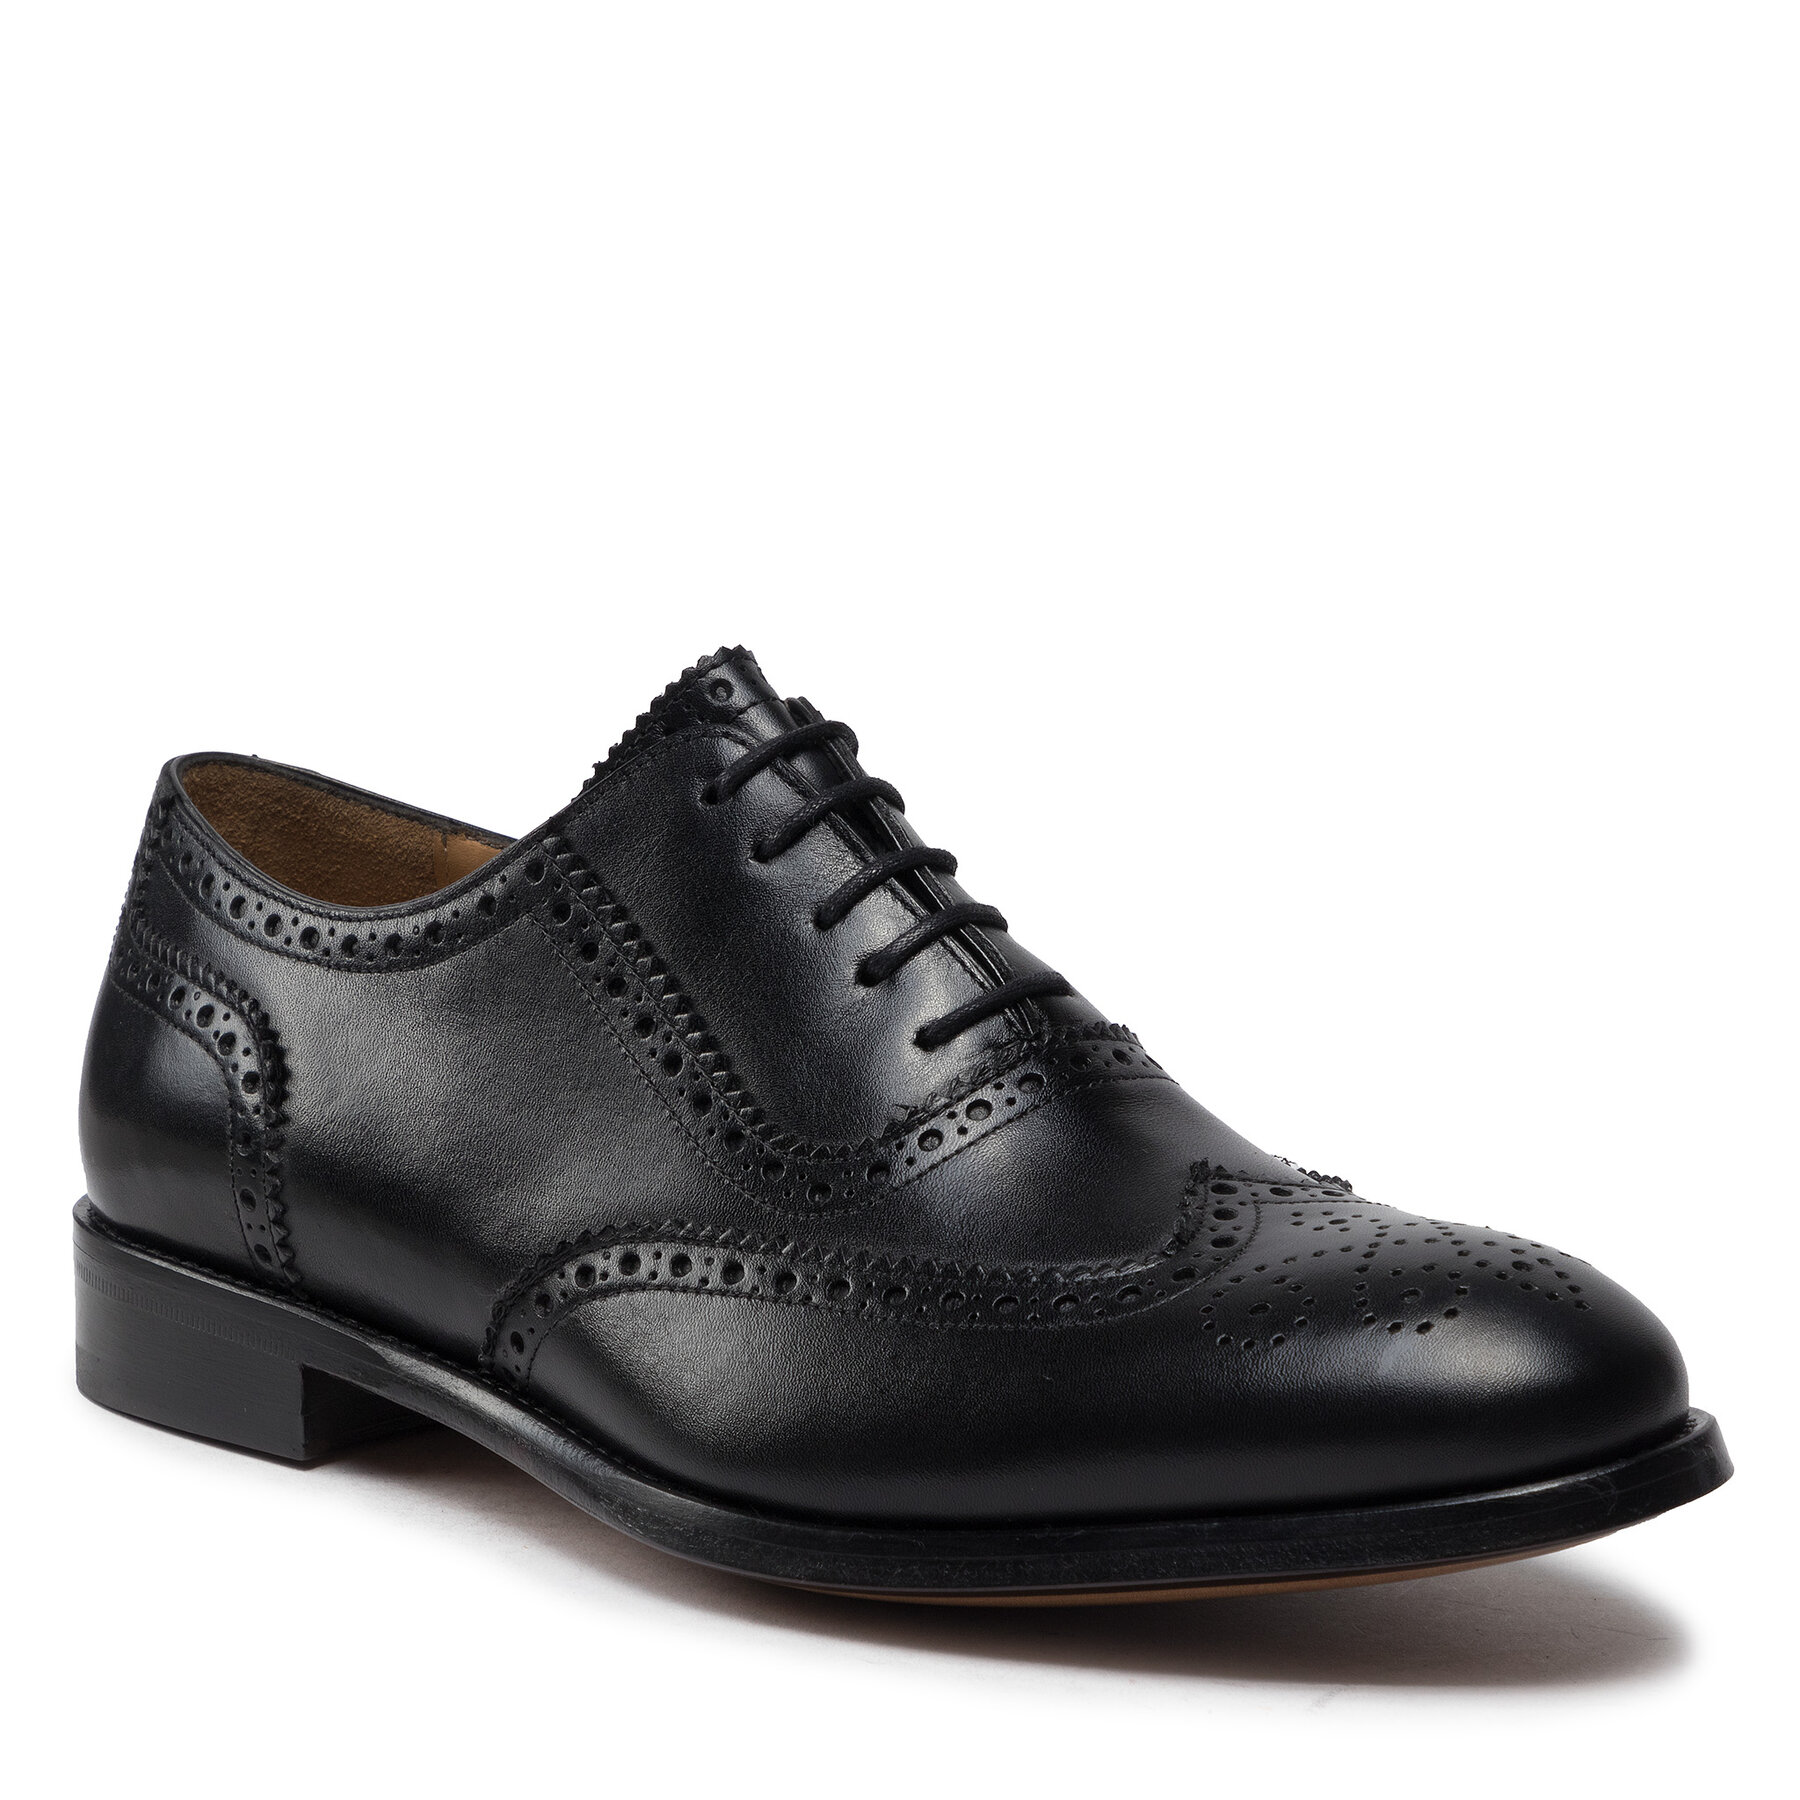 Pantofi Lord Premium Brogues 5501 Black L01 5501 imagine 2022 reducere